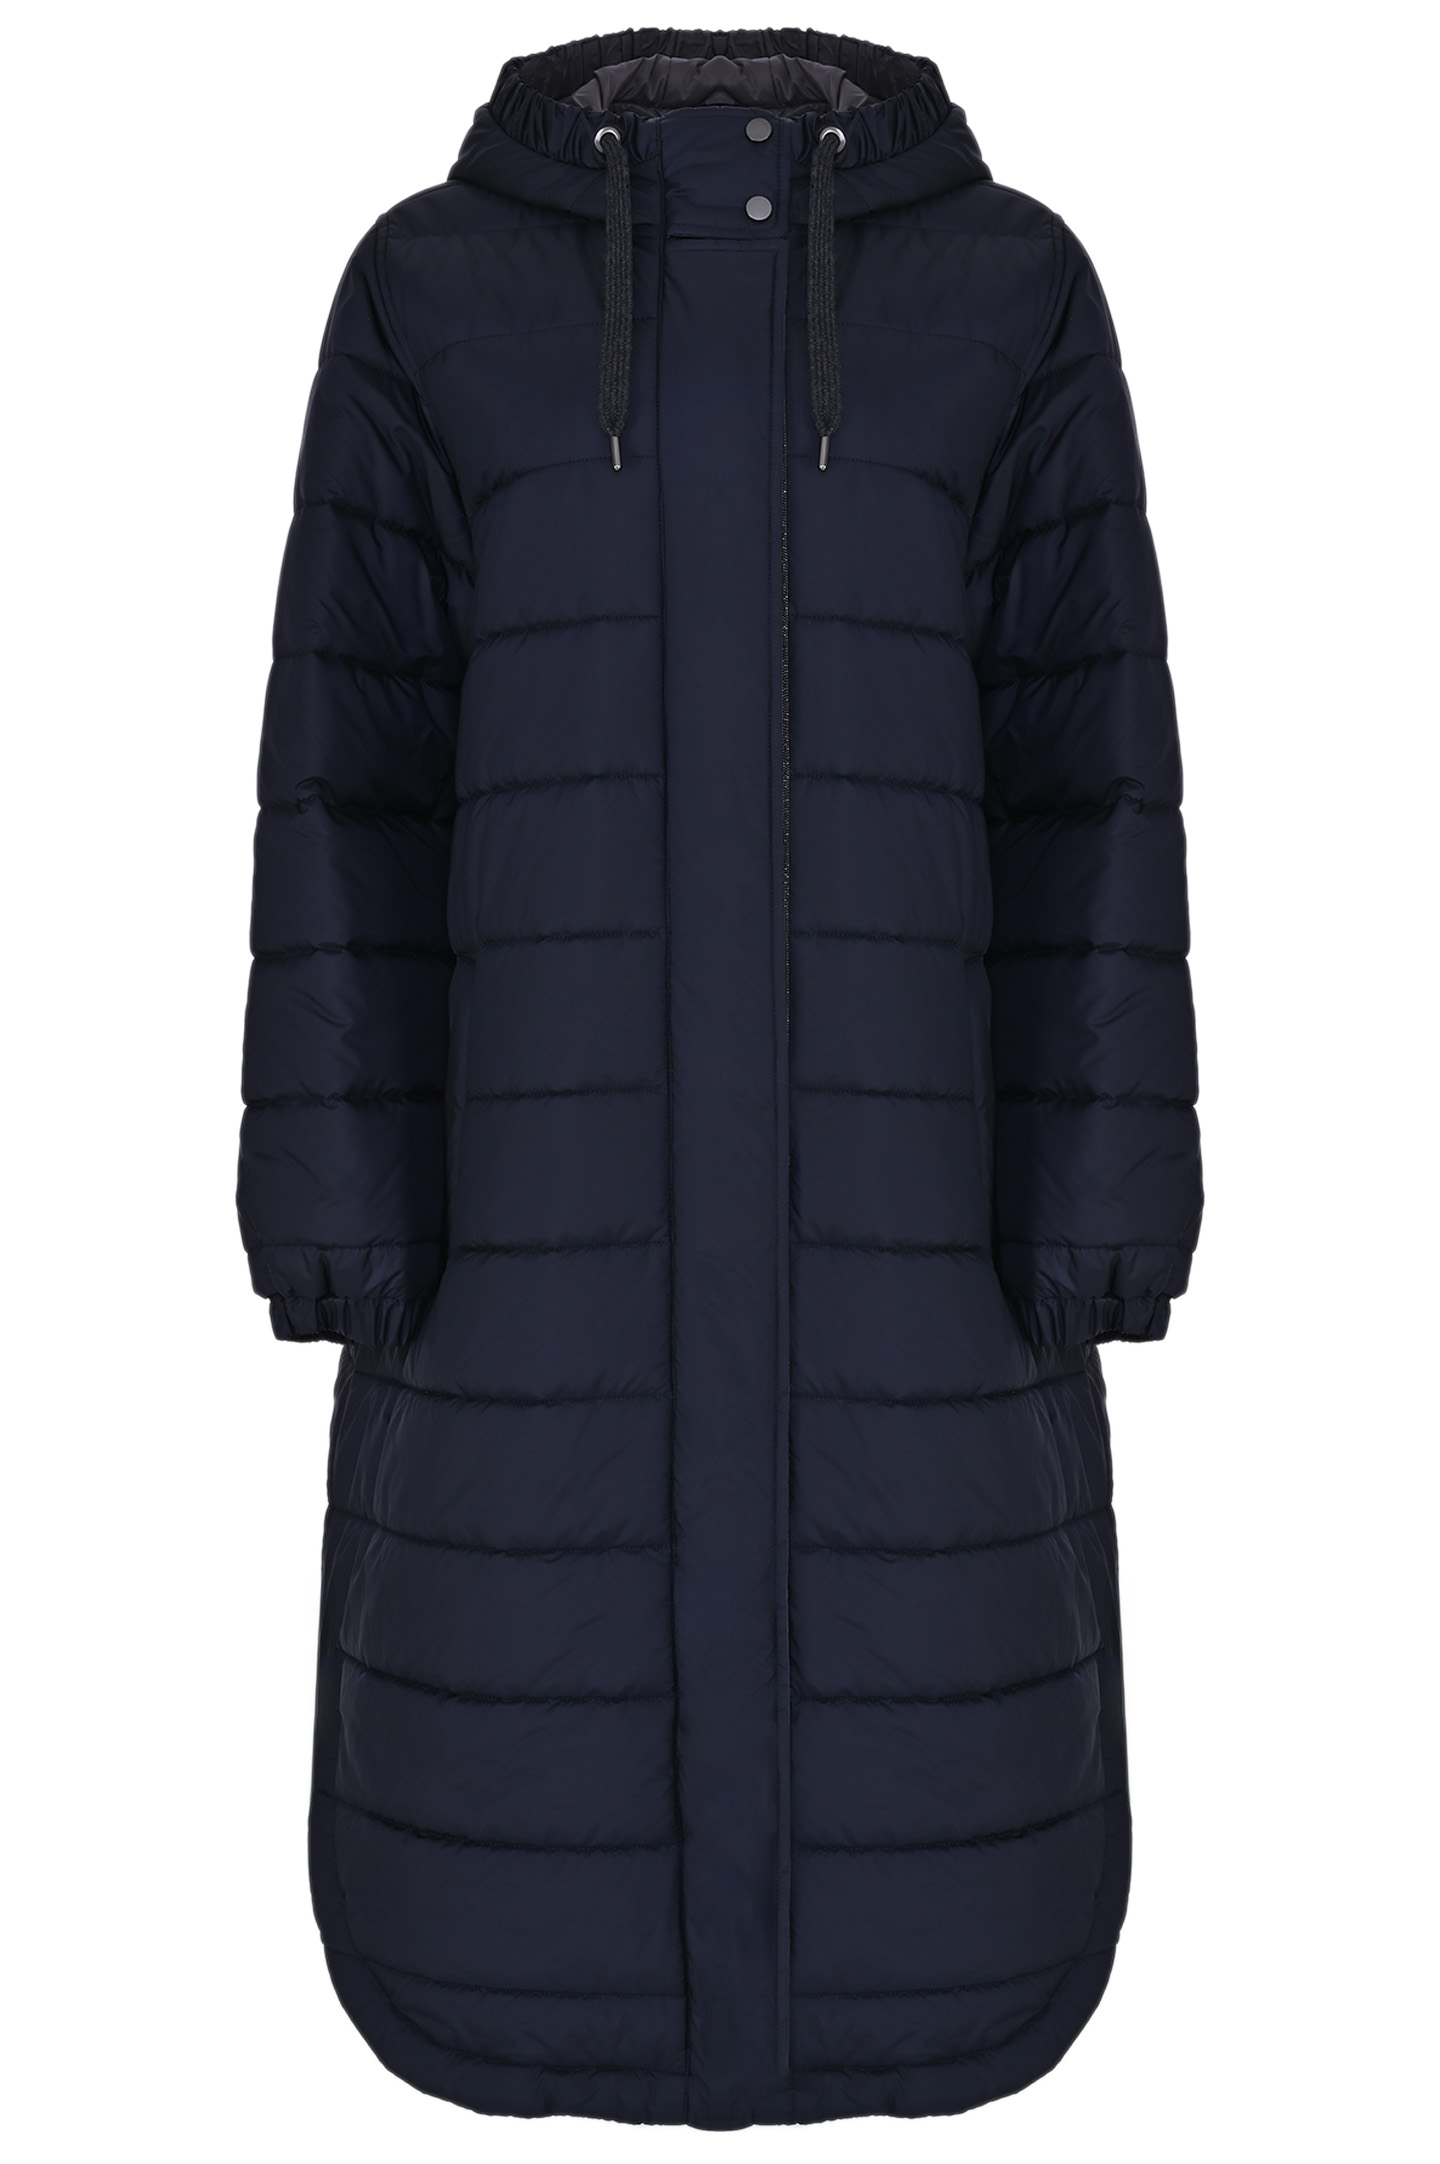 Куртка BRUNELLO  CUCINELLI MH5049699P, цвет: Темно-синий, Женский